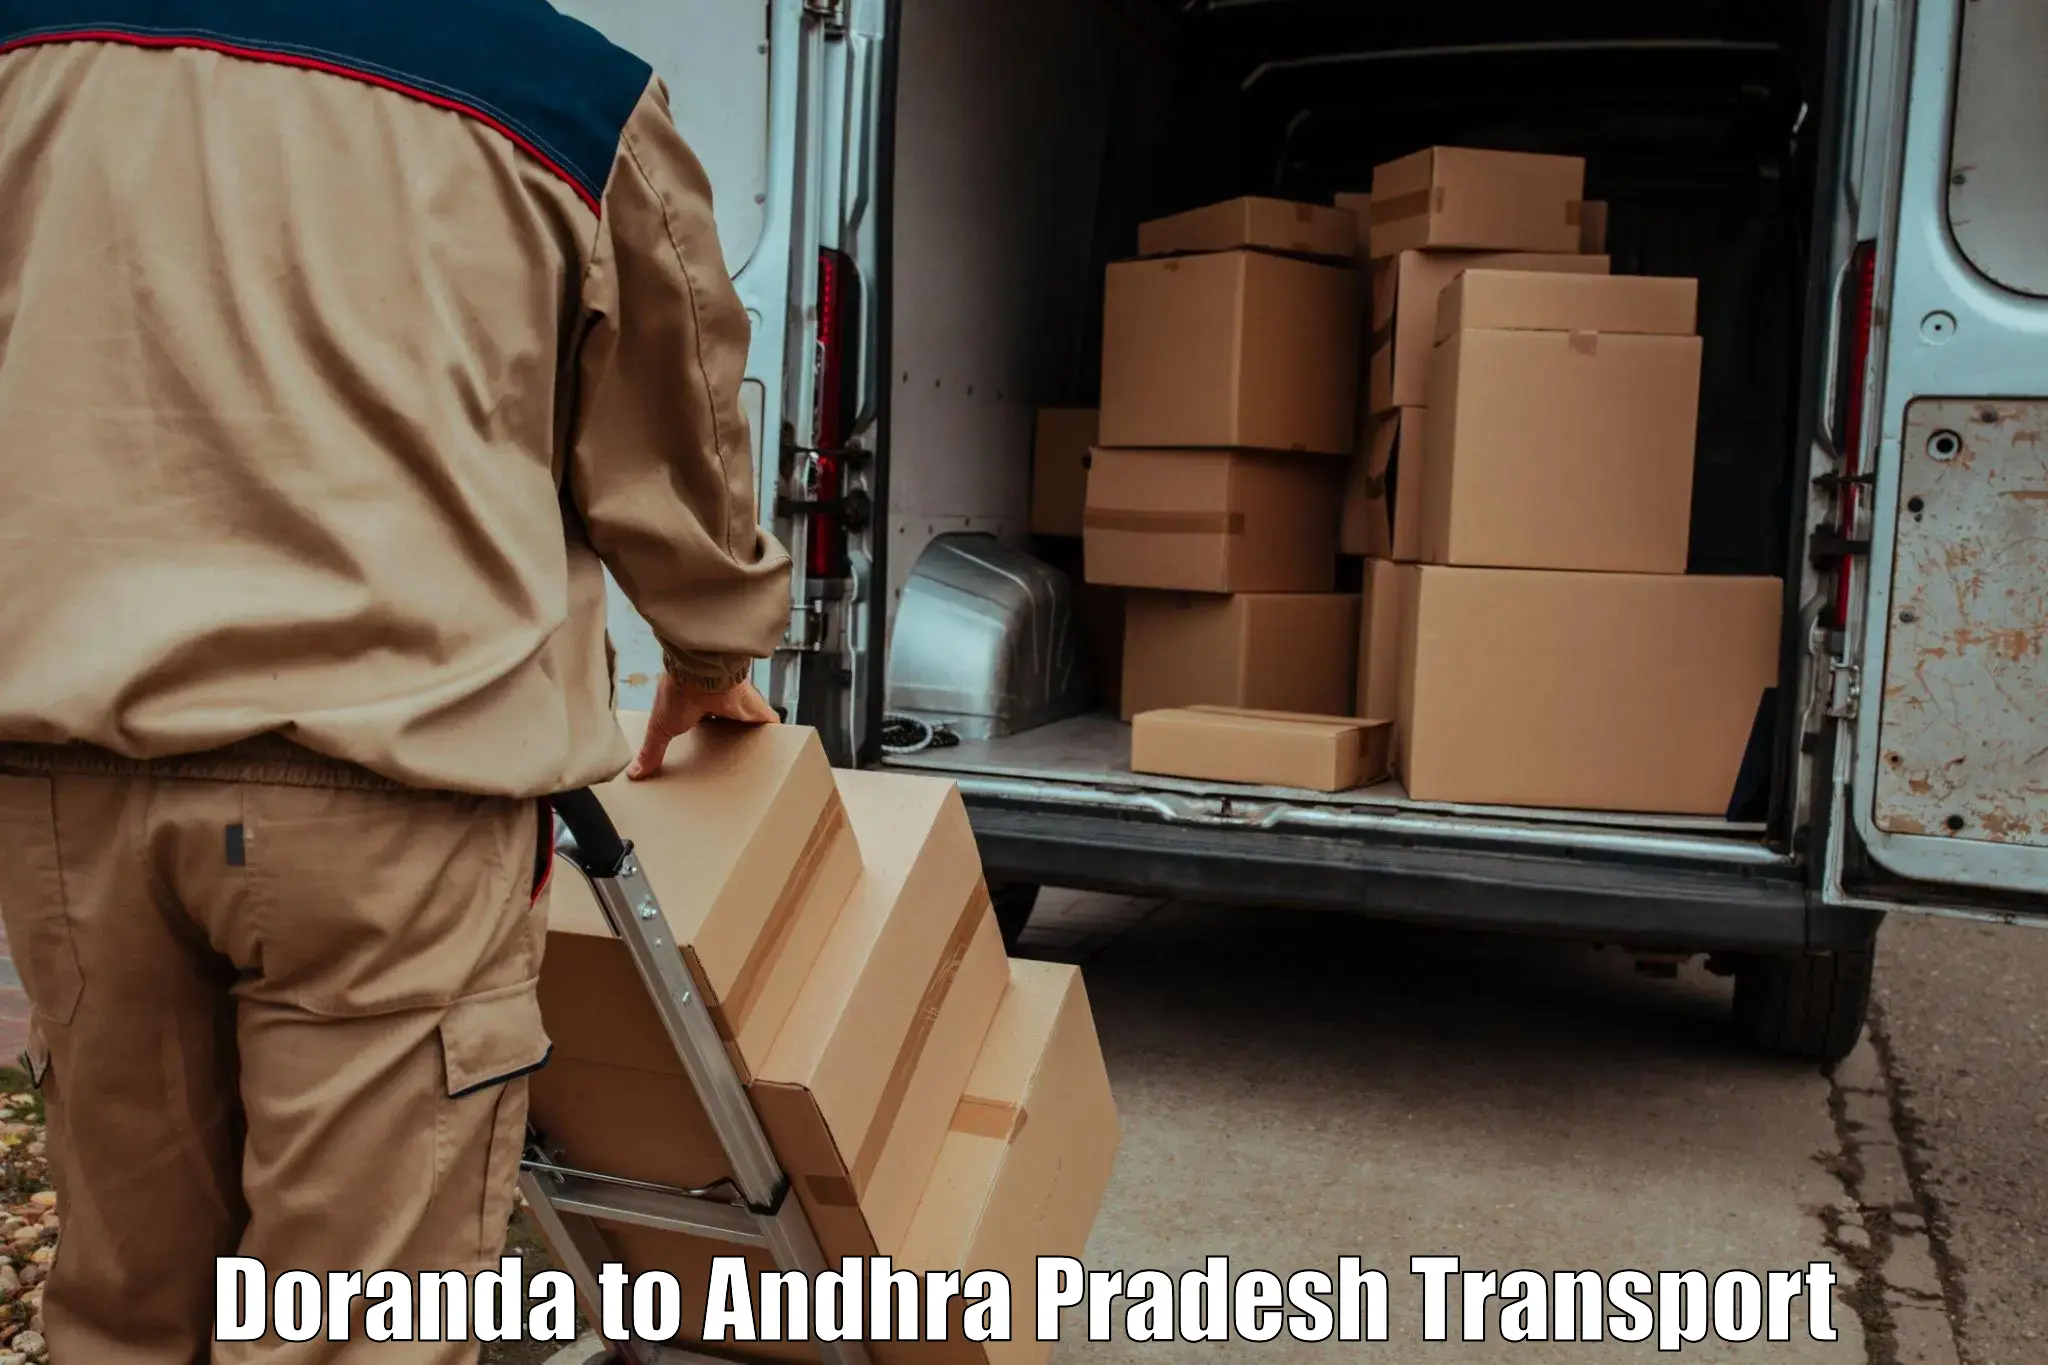 Cargo transport services Doranda to Vizianagaram